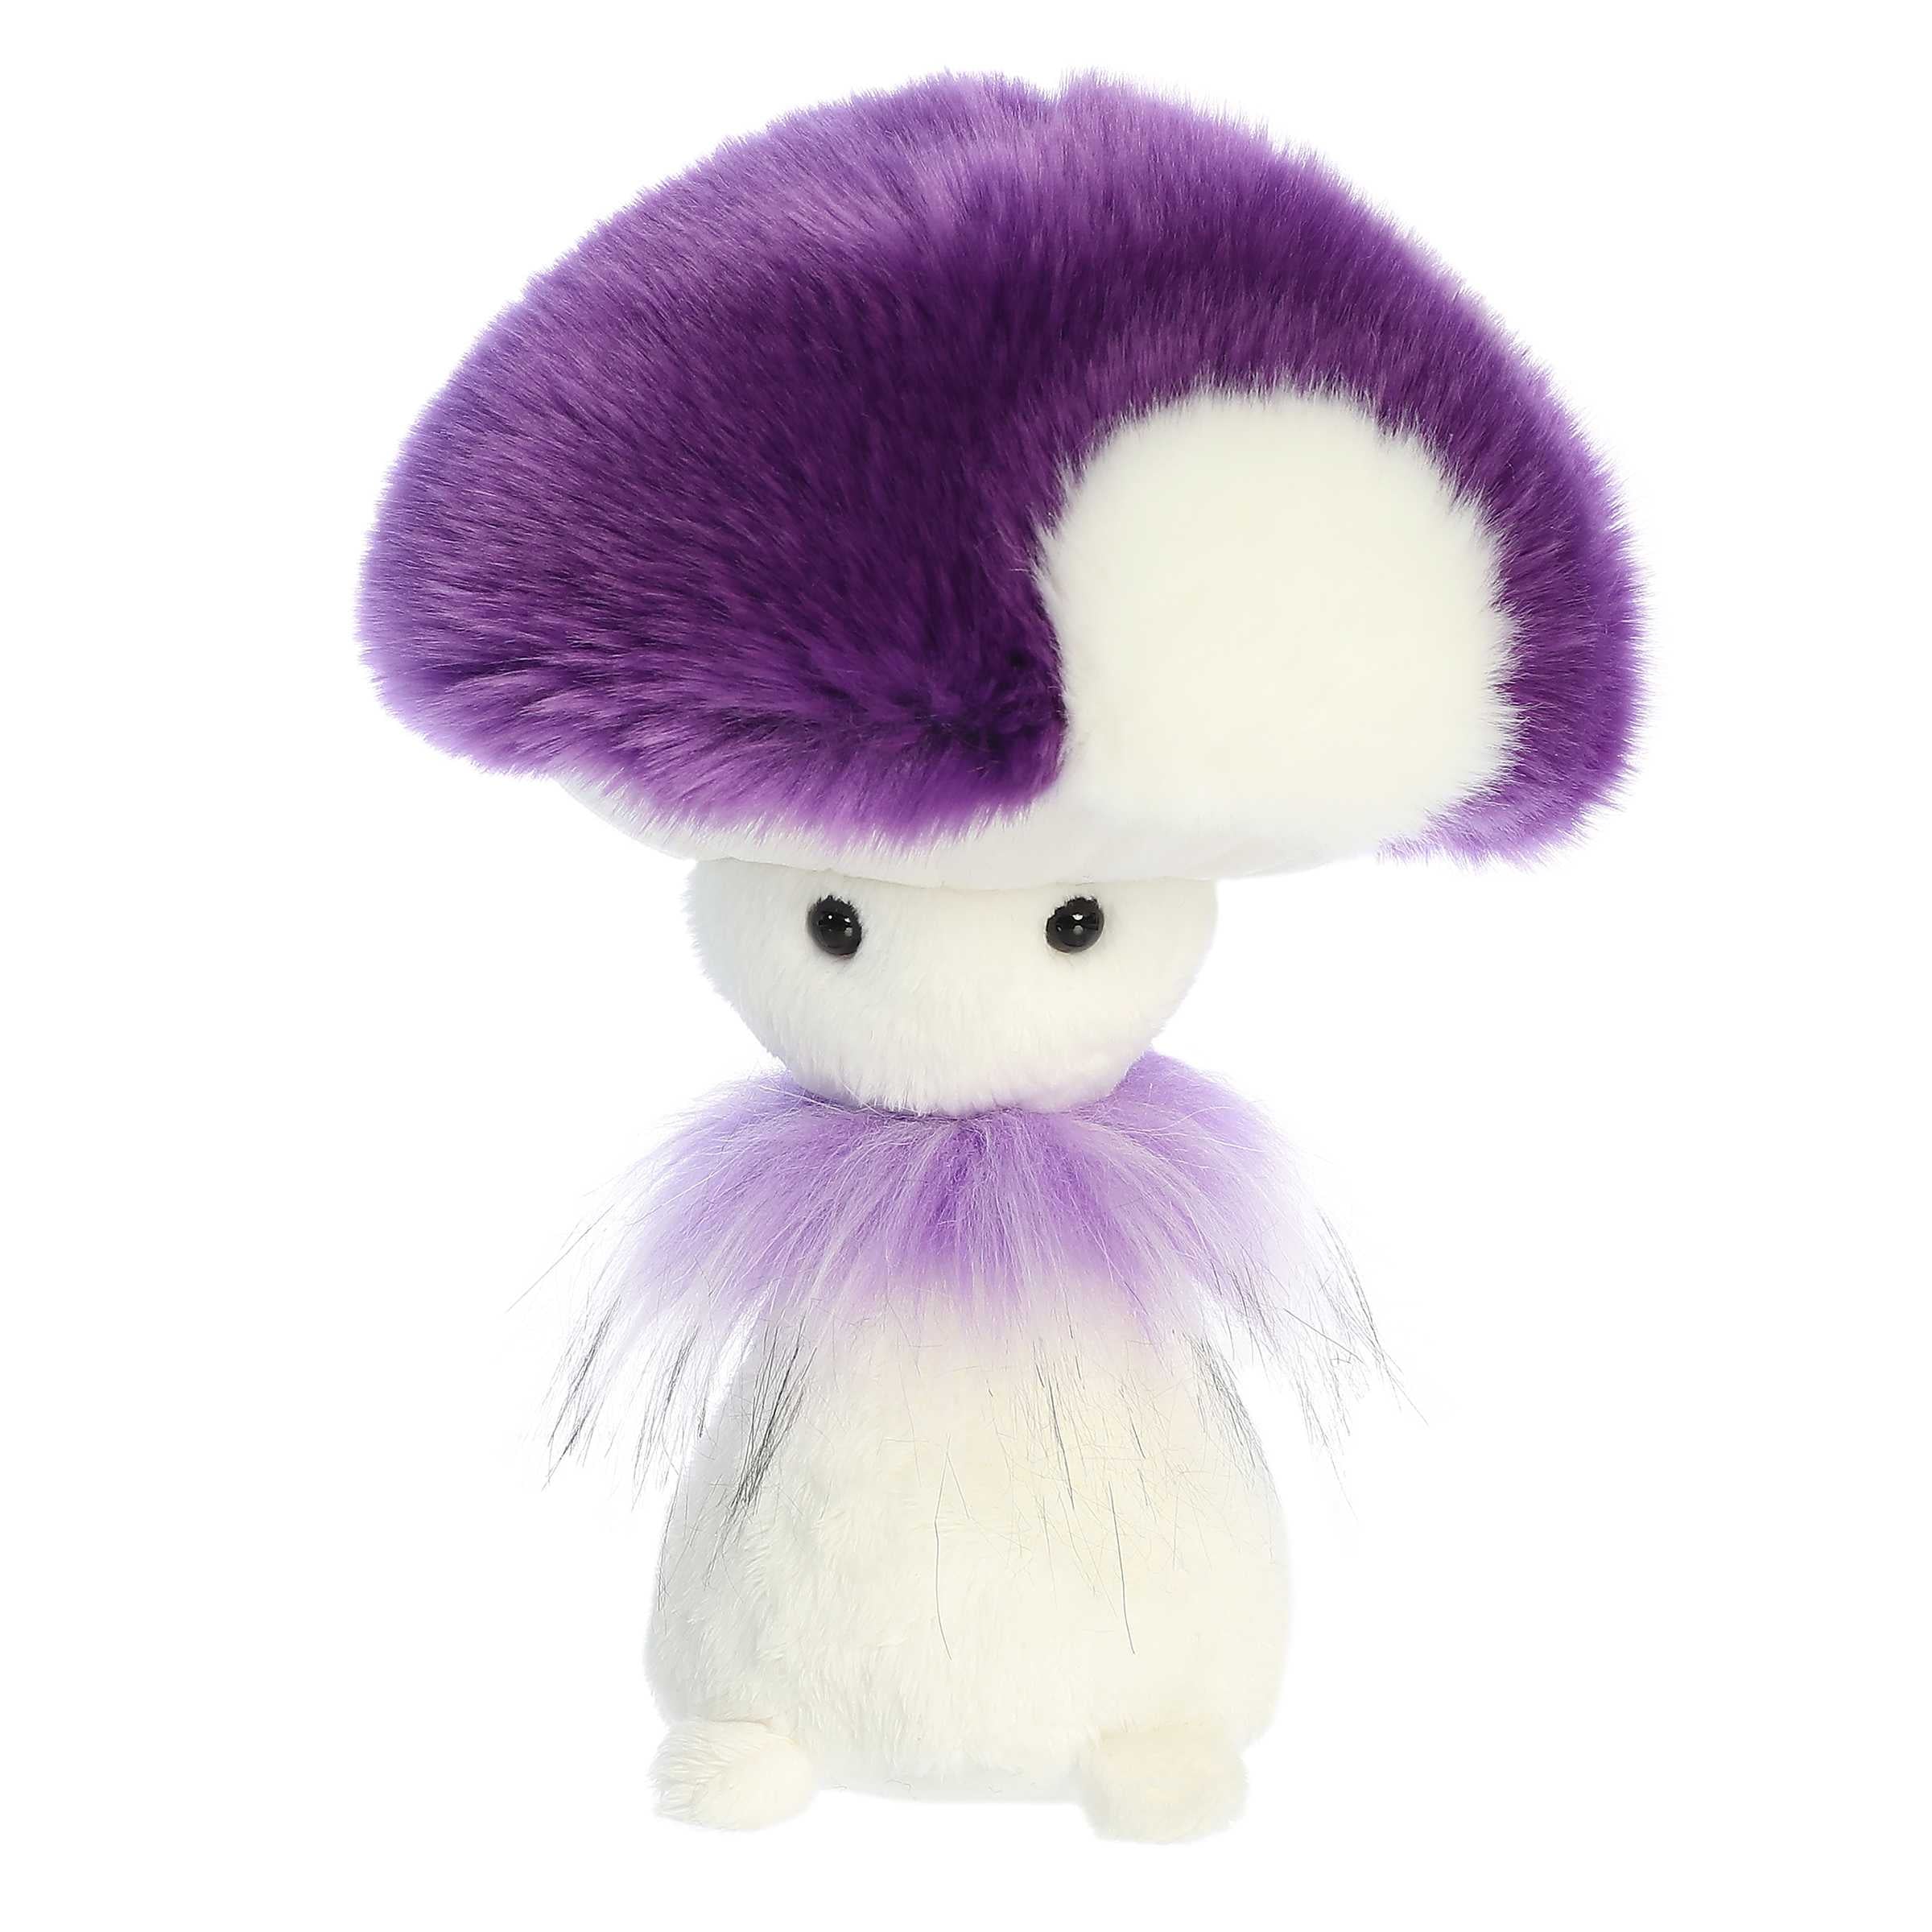 Aurora® - Fungi Friends™ - 9" Pretty Purple